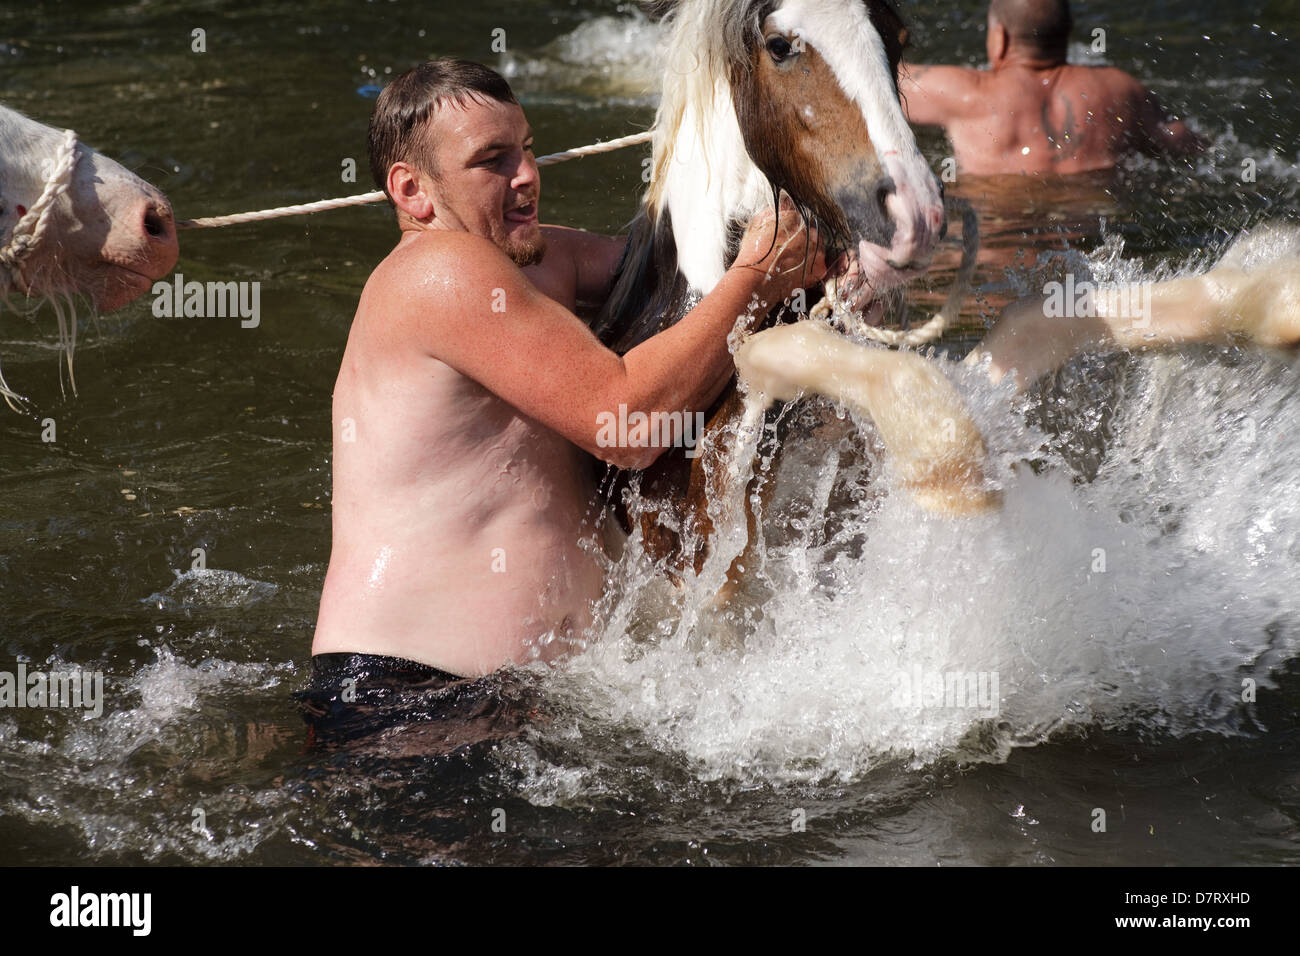 Un homme avec un cheval dans la rivière à l'Appleby, juste un rassemblement annuel des communautés tsiganes et voyageurs dans la région de Cumbria, Angleterre. Banque D'Images